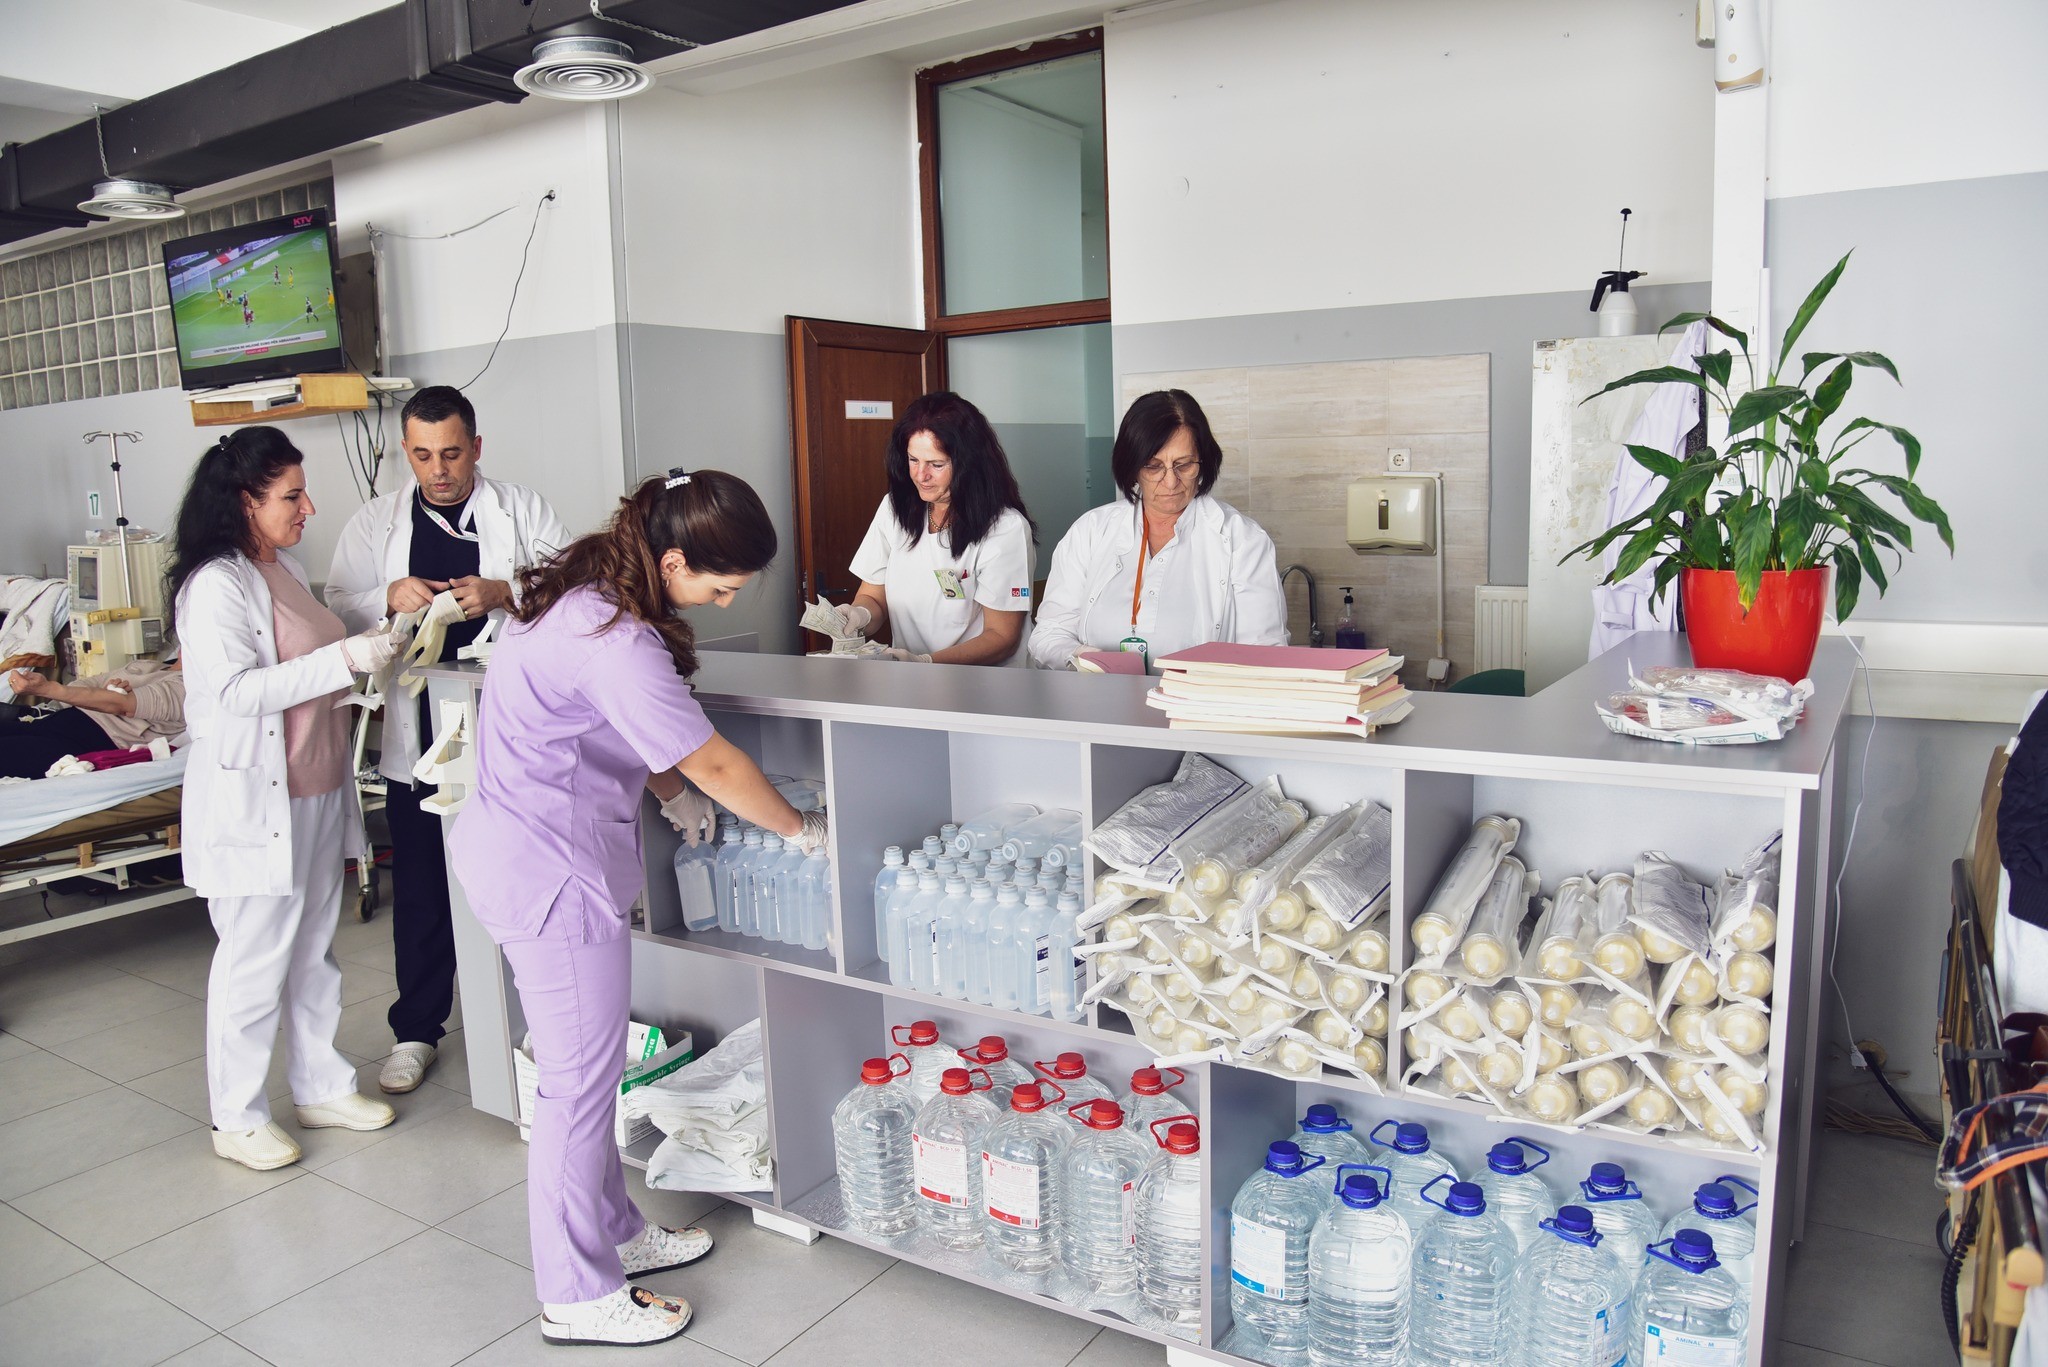 212 pacientë marrin shërbime falas të Dializës në Spitalin e Prizrenit